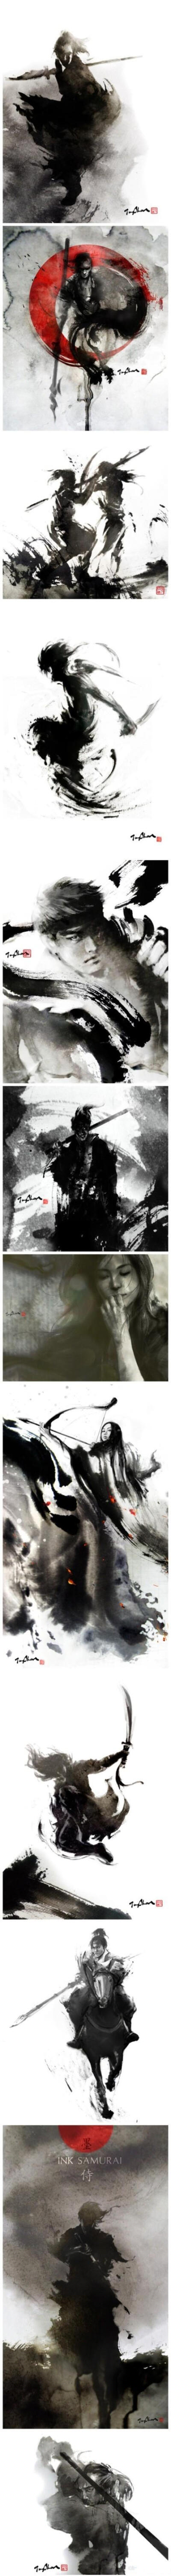 中国与西方风格，中国水墨画以及Photoshop数字工具的完美结合，画出这一幅一幅充满了灵动感的东方武士——台湾女插画师 张榕珊